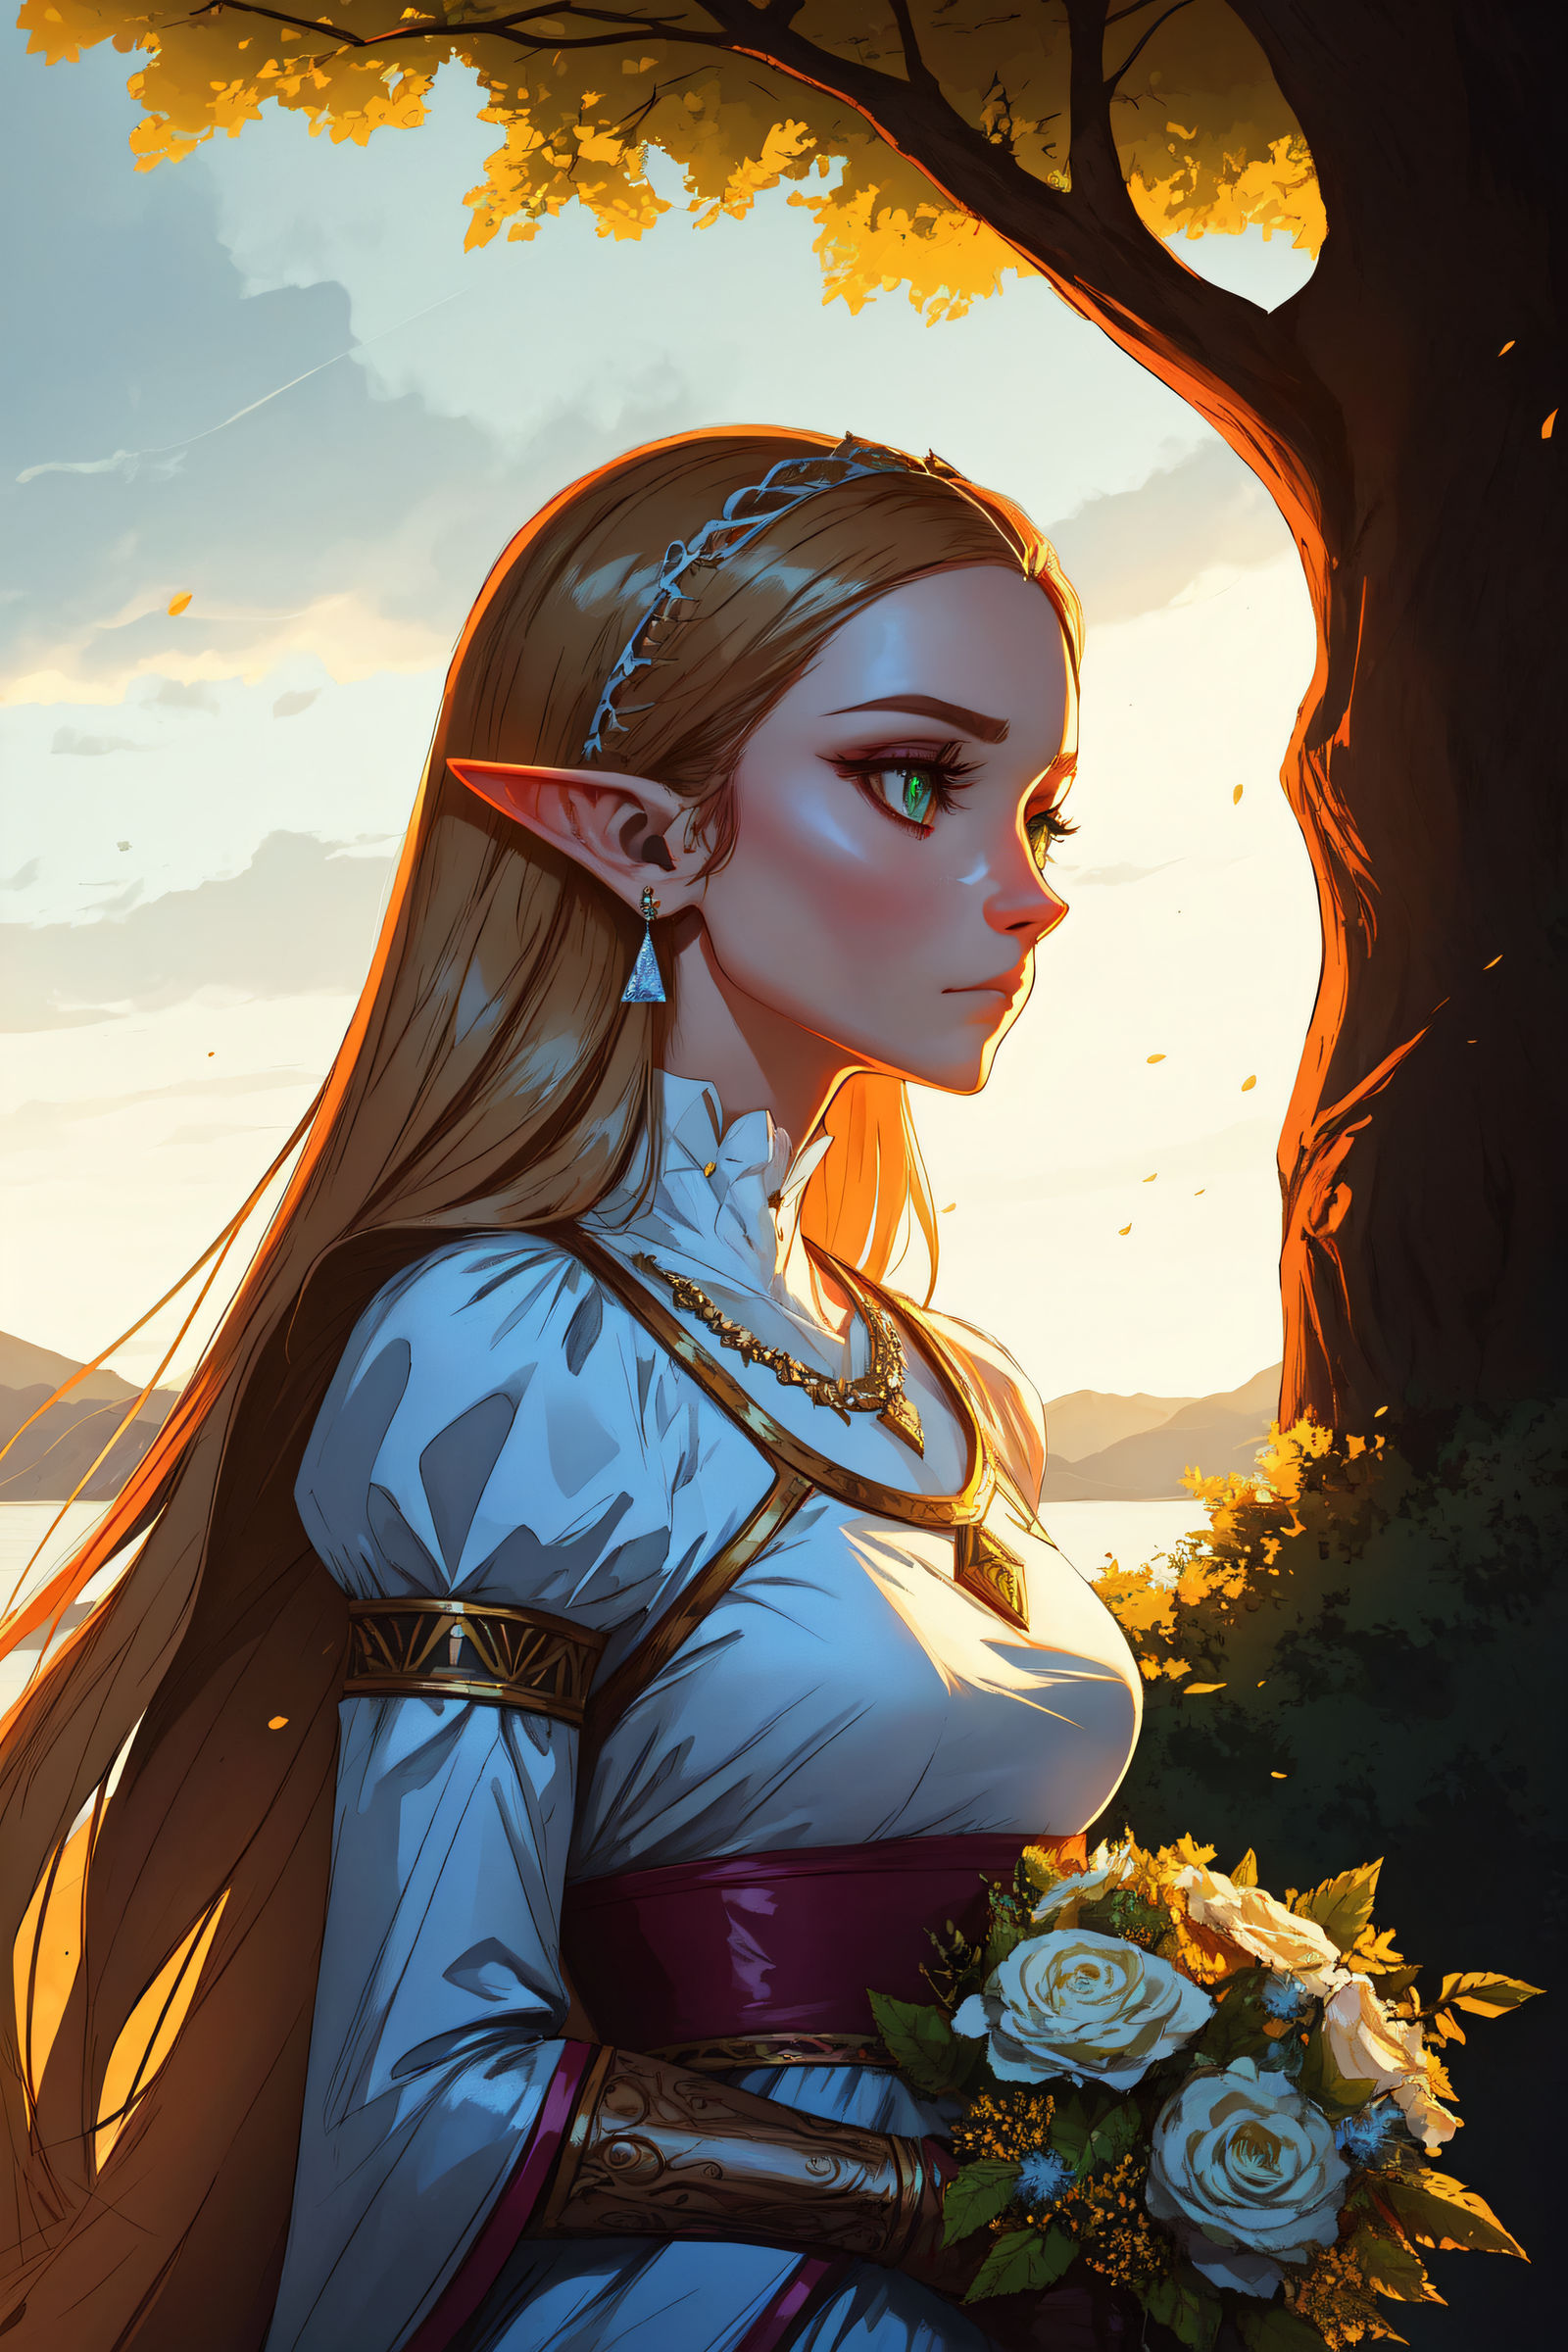 Link (The Legend of Zelda) by Dantegonist on DeviantArt